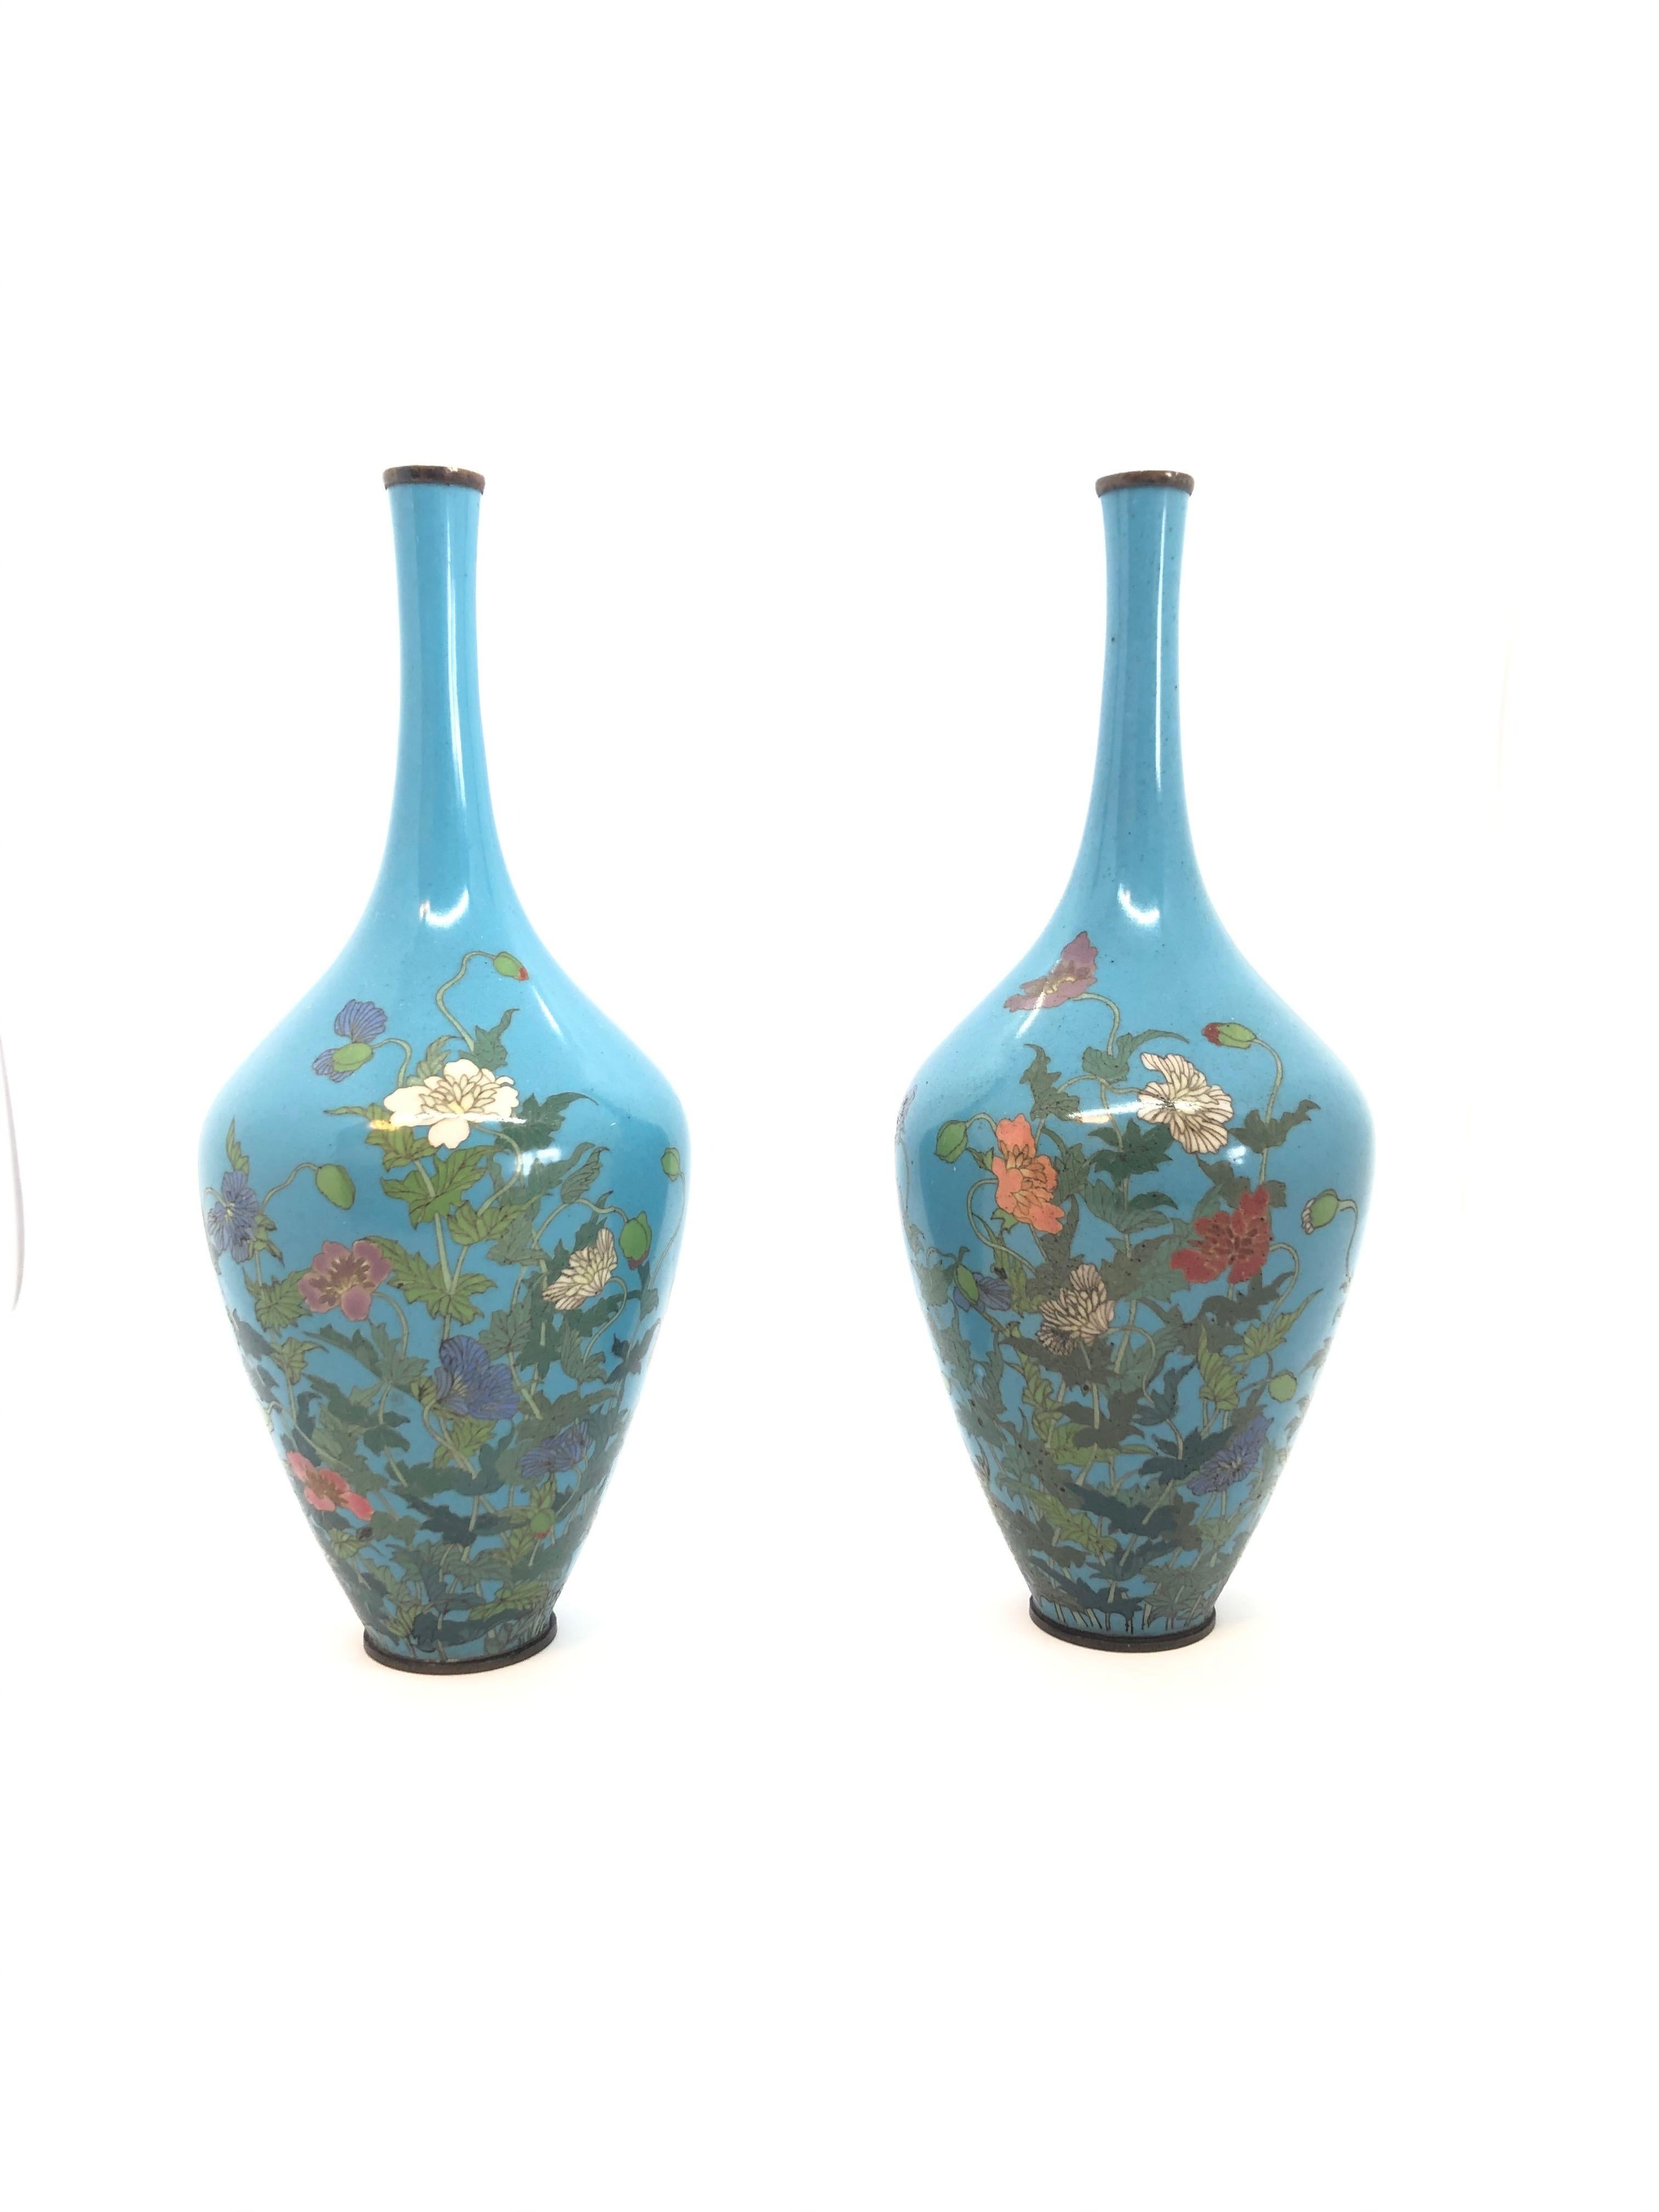 Ein dekoratives Paar japanischer Cloisonné-Vasen mit Blumenmotiven auf türkisfarbenem Hintergrund. Meiji-Periode.